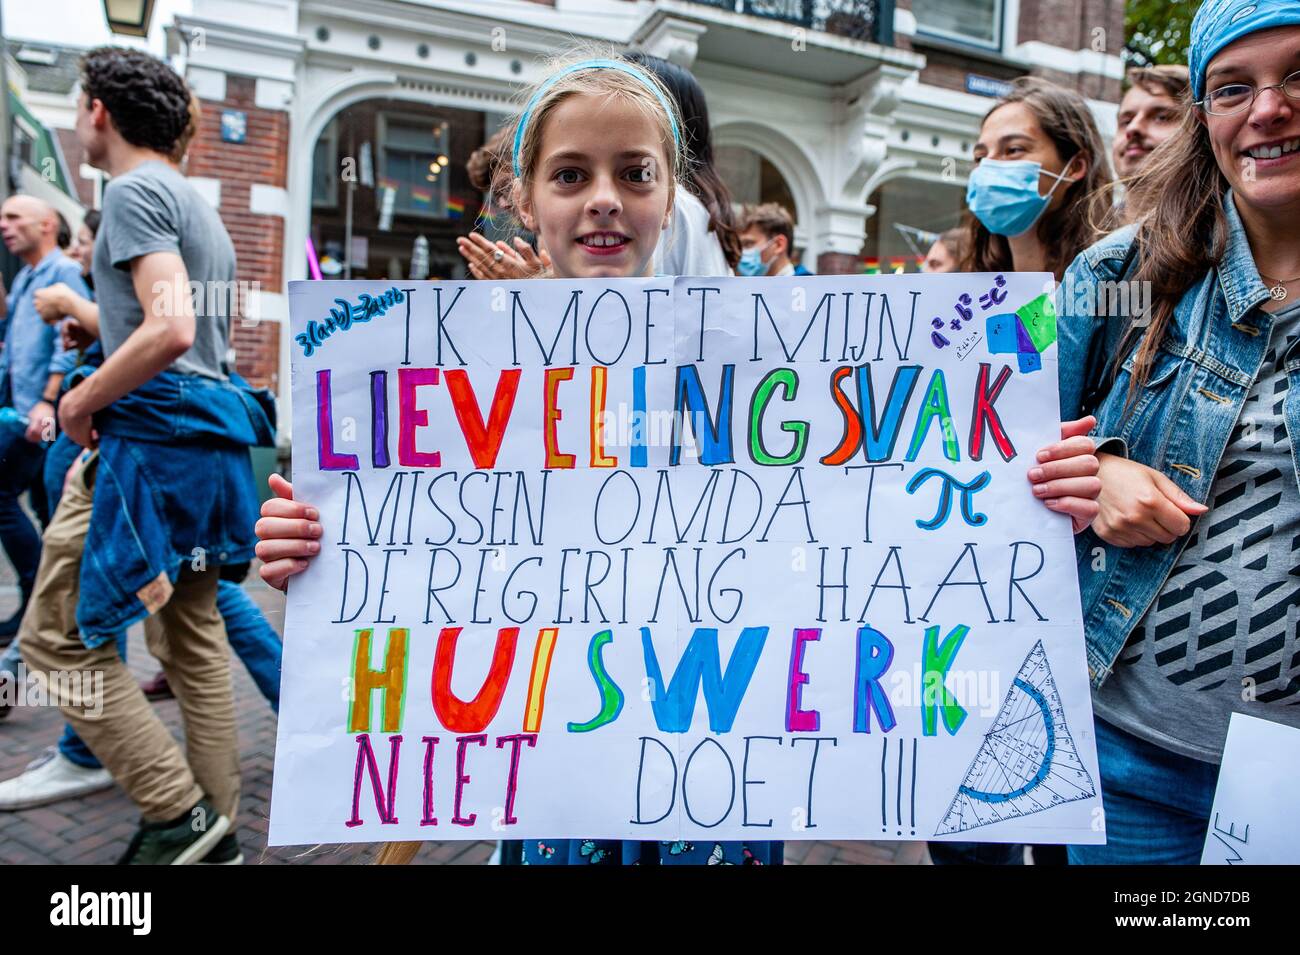 Während der Demonstration wird ein kleines Mädchen mit einem Plakat über die Niederländer gegen den Klimawandel gesehen.Diesen Freitag streikten Zehntausende von Kindern in mehr als 60 Ländern, um Maßnahmen gegen den Klimawandel zu fordern. #FridaysForFuture ist eine Bewegung, die im August 2018 begann, nachdem eine 15-jährige Greta Thunberg drei Wochen lang jeden Schultag vor dem schwedischen parlament saß, um gegen das mangelnde Handeln in der Klimakrise zu protestieren. In Utrecht protestierten nicht nur Studenten, sondern auch Lehrer, Klimaaktivisten aus dem ganzen Land für eine bessere Klimapolitik und um die Zerstörung zu stoppen o Stockfoto